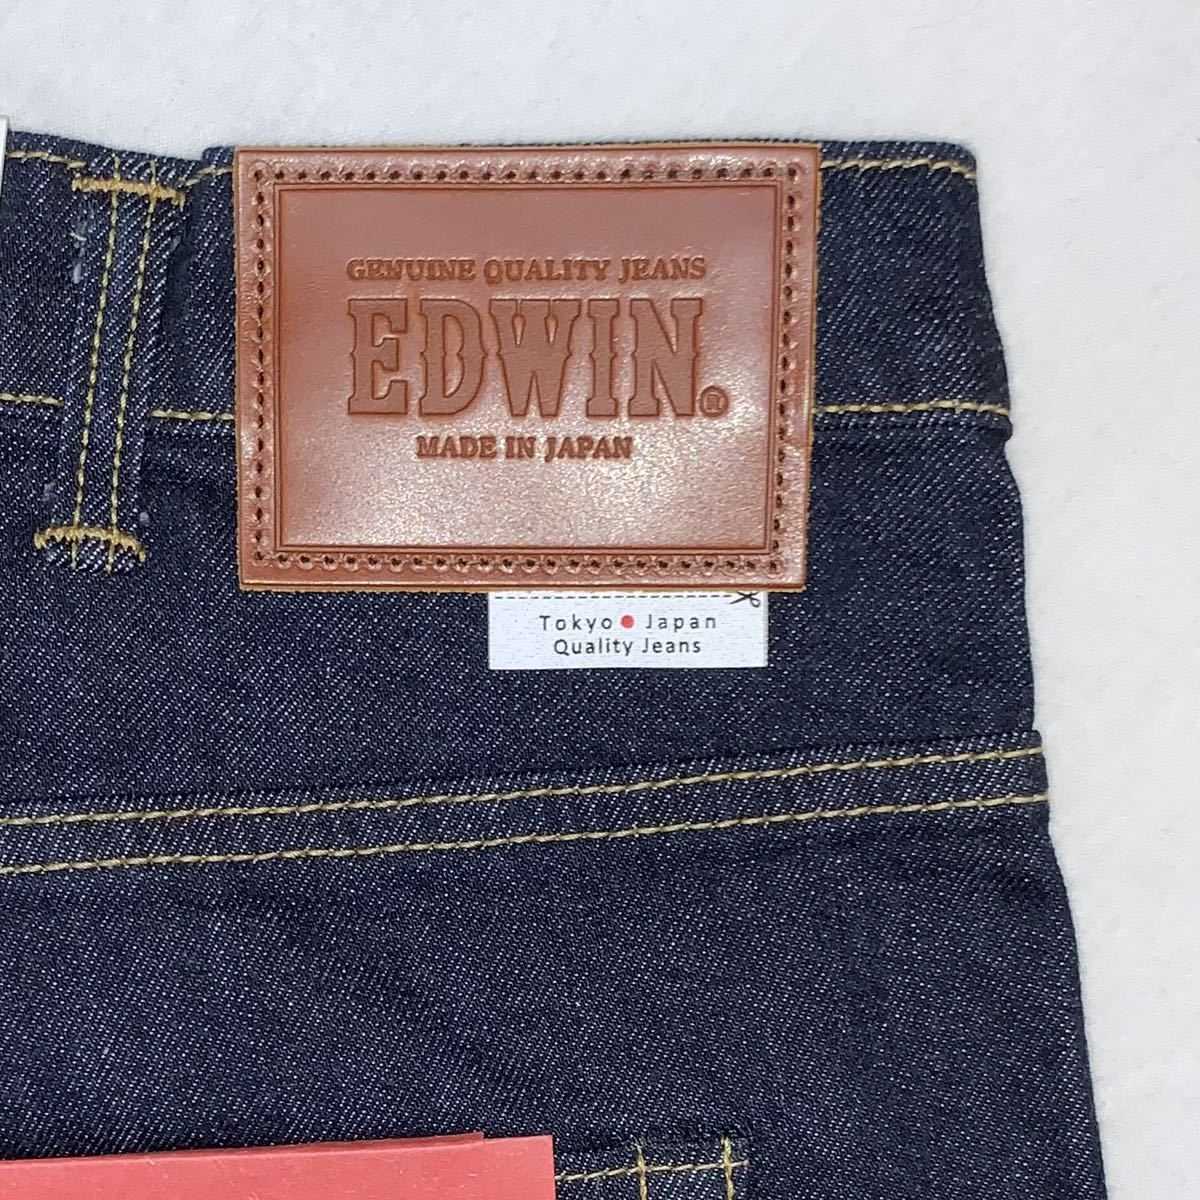  Edwin постоянный конический Denim брюки W44 EDWIN REGULAR TAPERD сделано в Японии большой размер ED33-1100